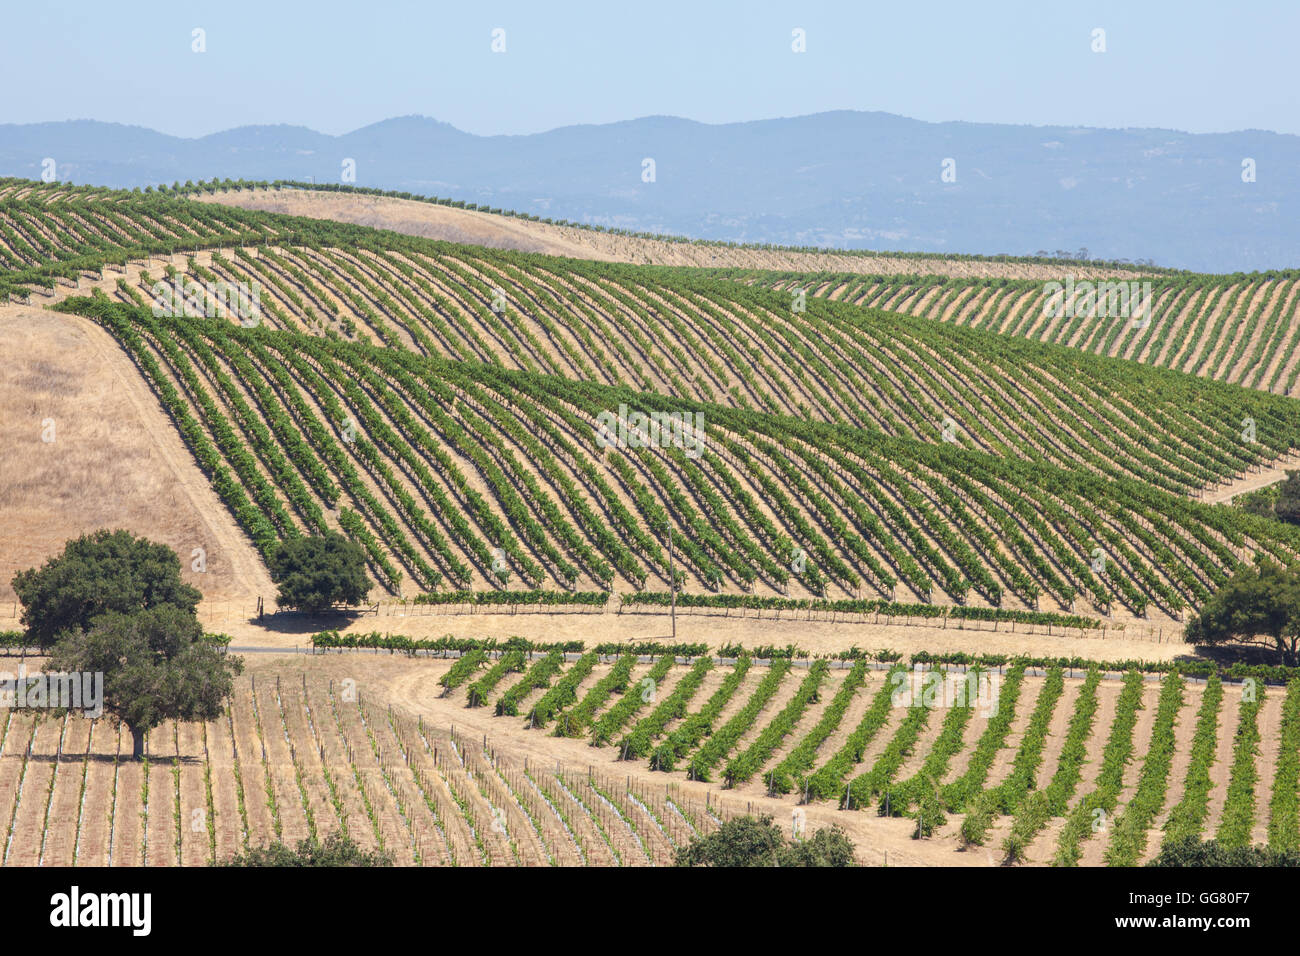 Vista desde la artesa Vineyards & Winery, los viñedos de Napa Valley resumen Foto de stock